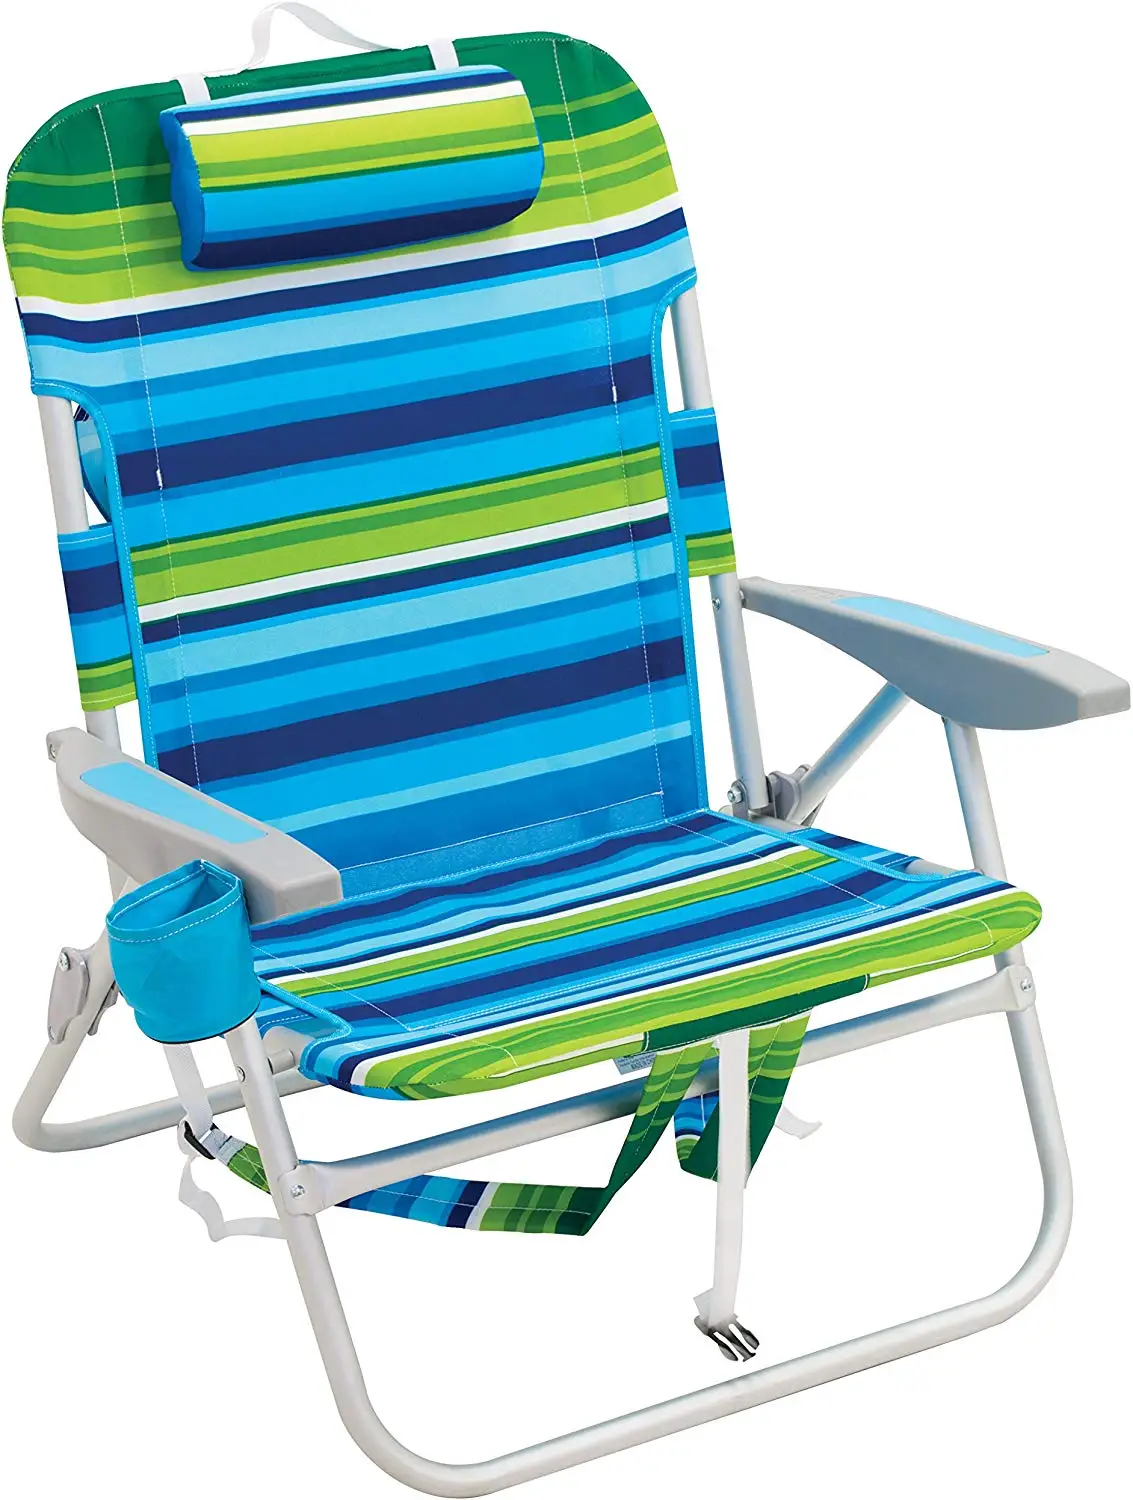 Most Popular Hot Selling Aluminium Beach Chair - Buy Aluminium Beach